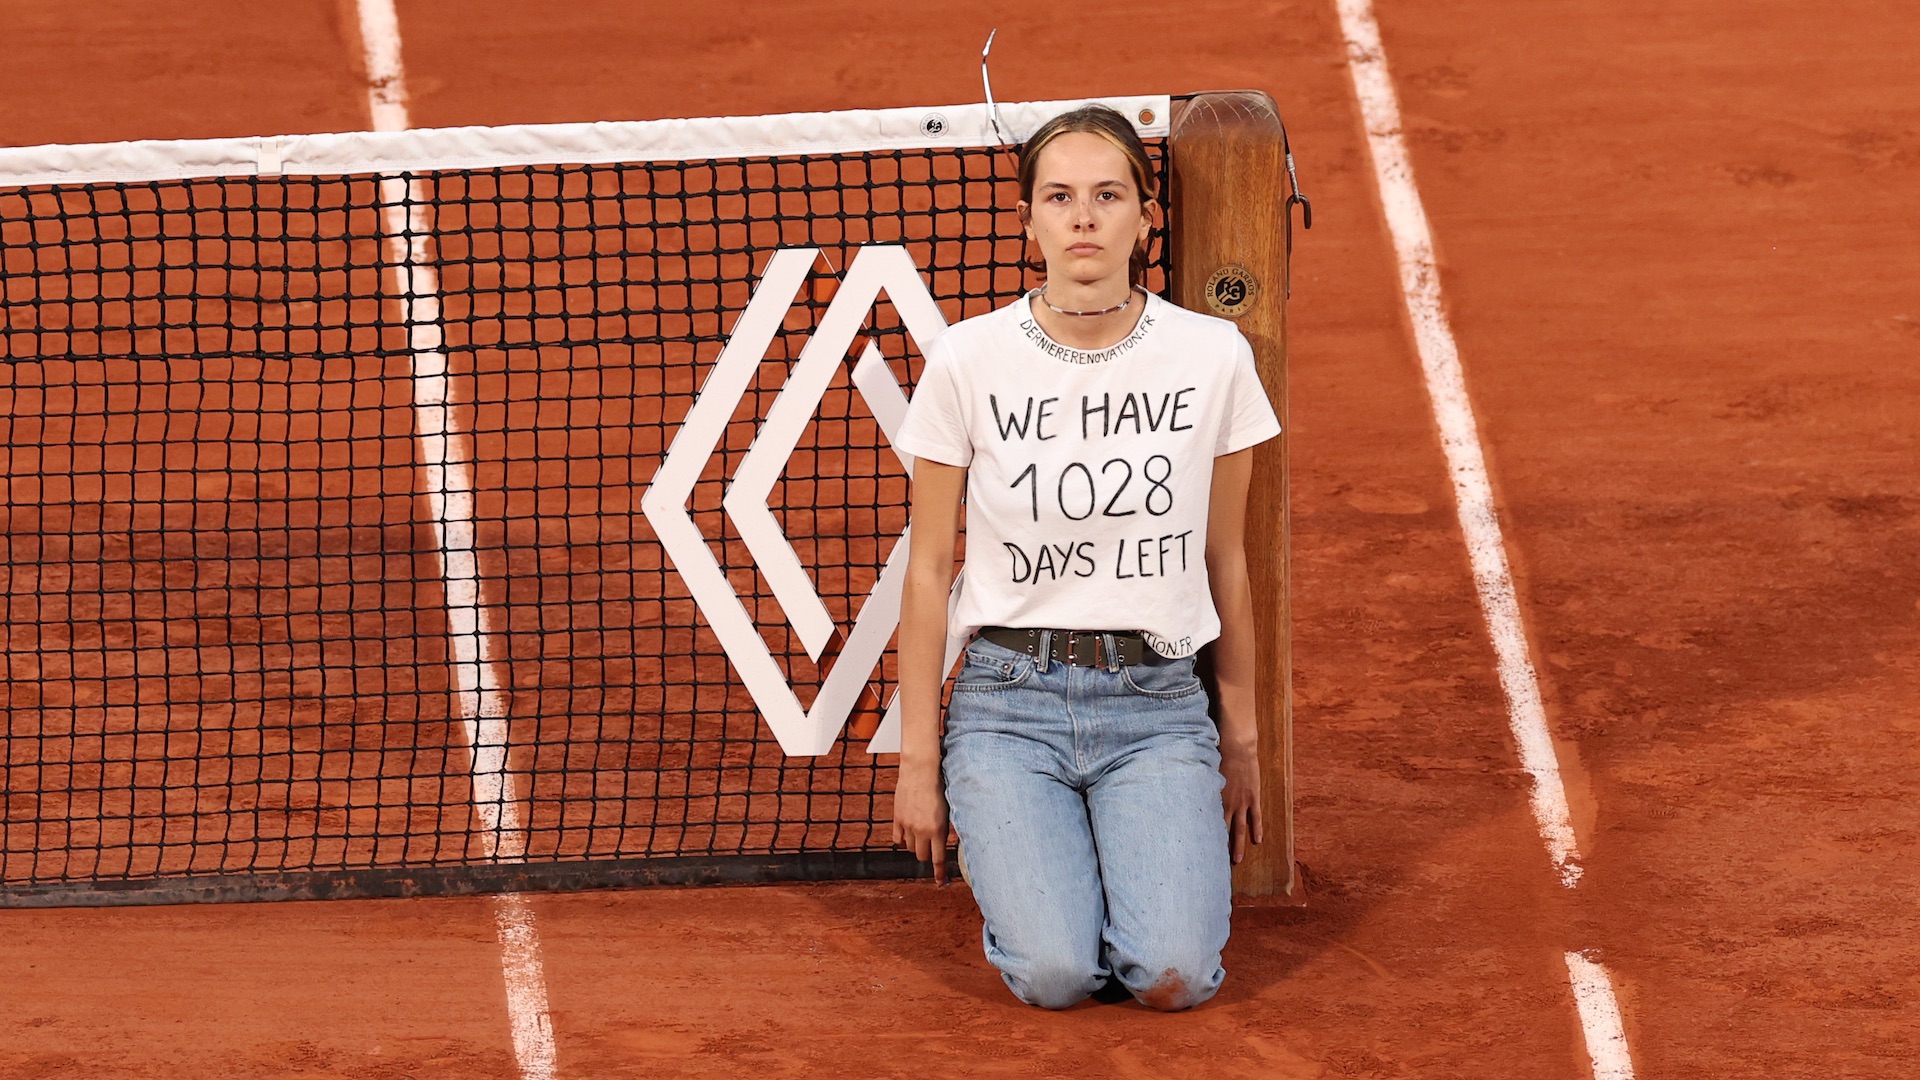 Roland Garros 2022: Ruud-Cilic interrotta per una ragazza incatenata alla rete, le foto